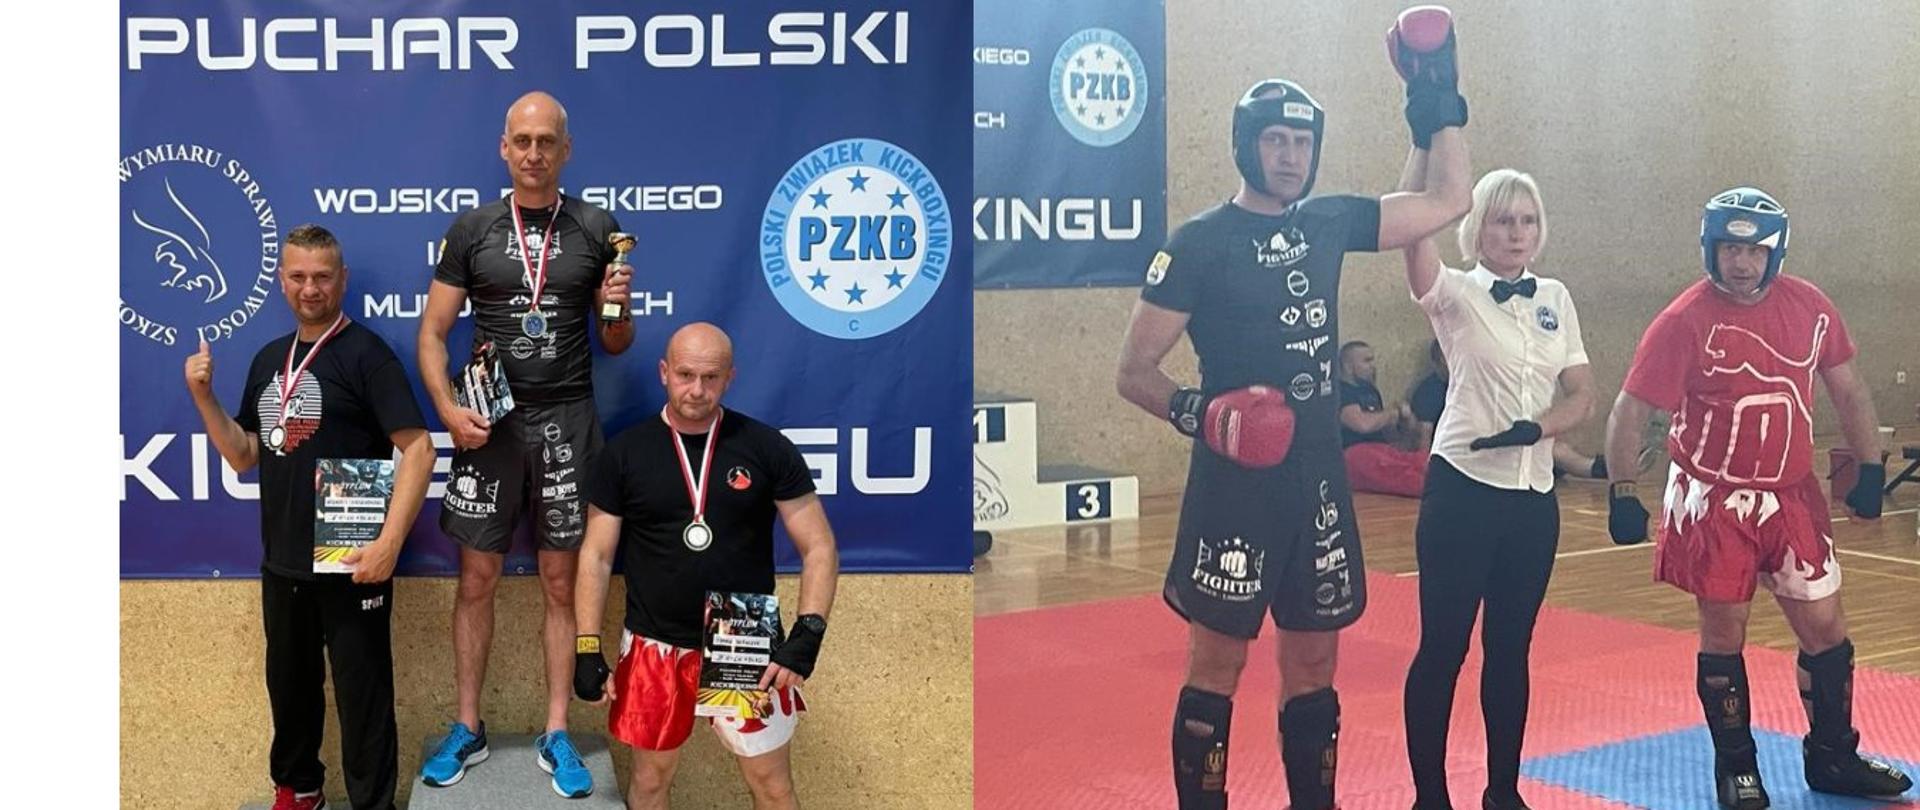 na zdjęciu widać zawodników startujących w Pucharze Polski Wojska Polskiego i Służb Mundurowych w Kickboxingu. Zdjęcie po lewej - stoją na podium. Zdjęcie po prawej - sędzia unosi rękawicę zwycięzcy walki Damiana Terleckiego